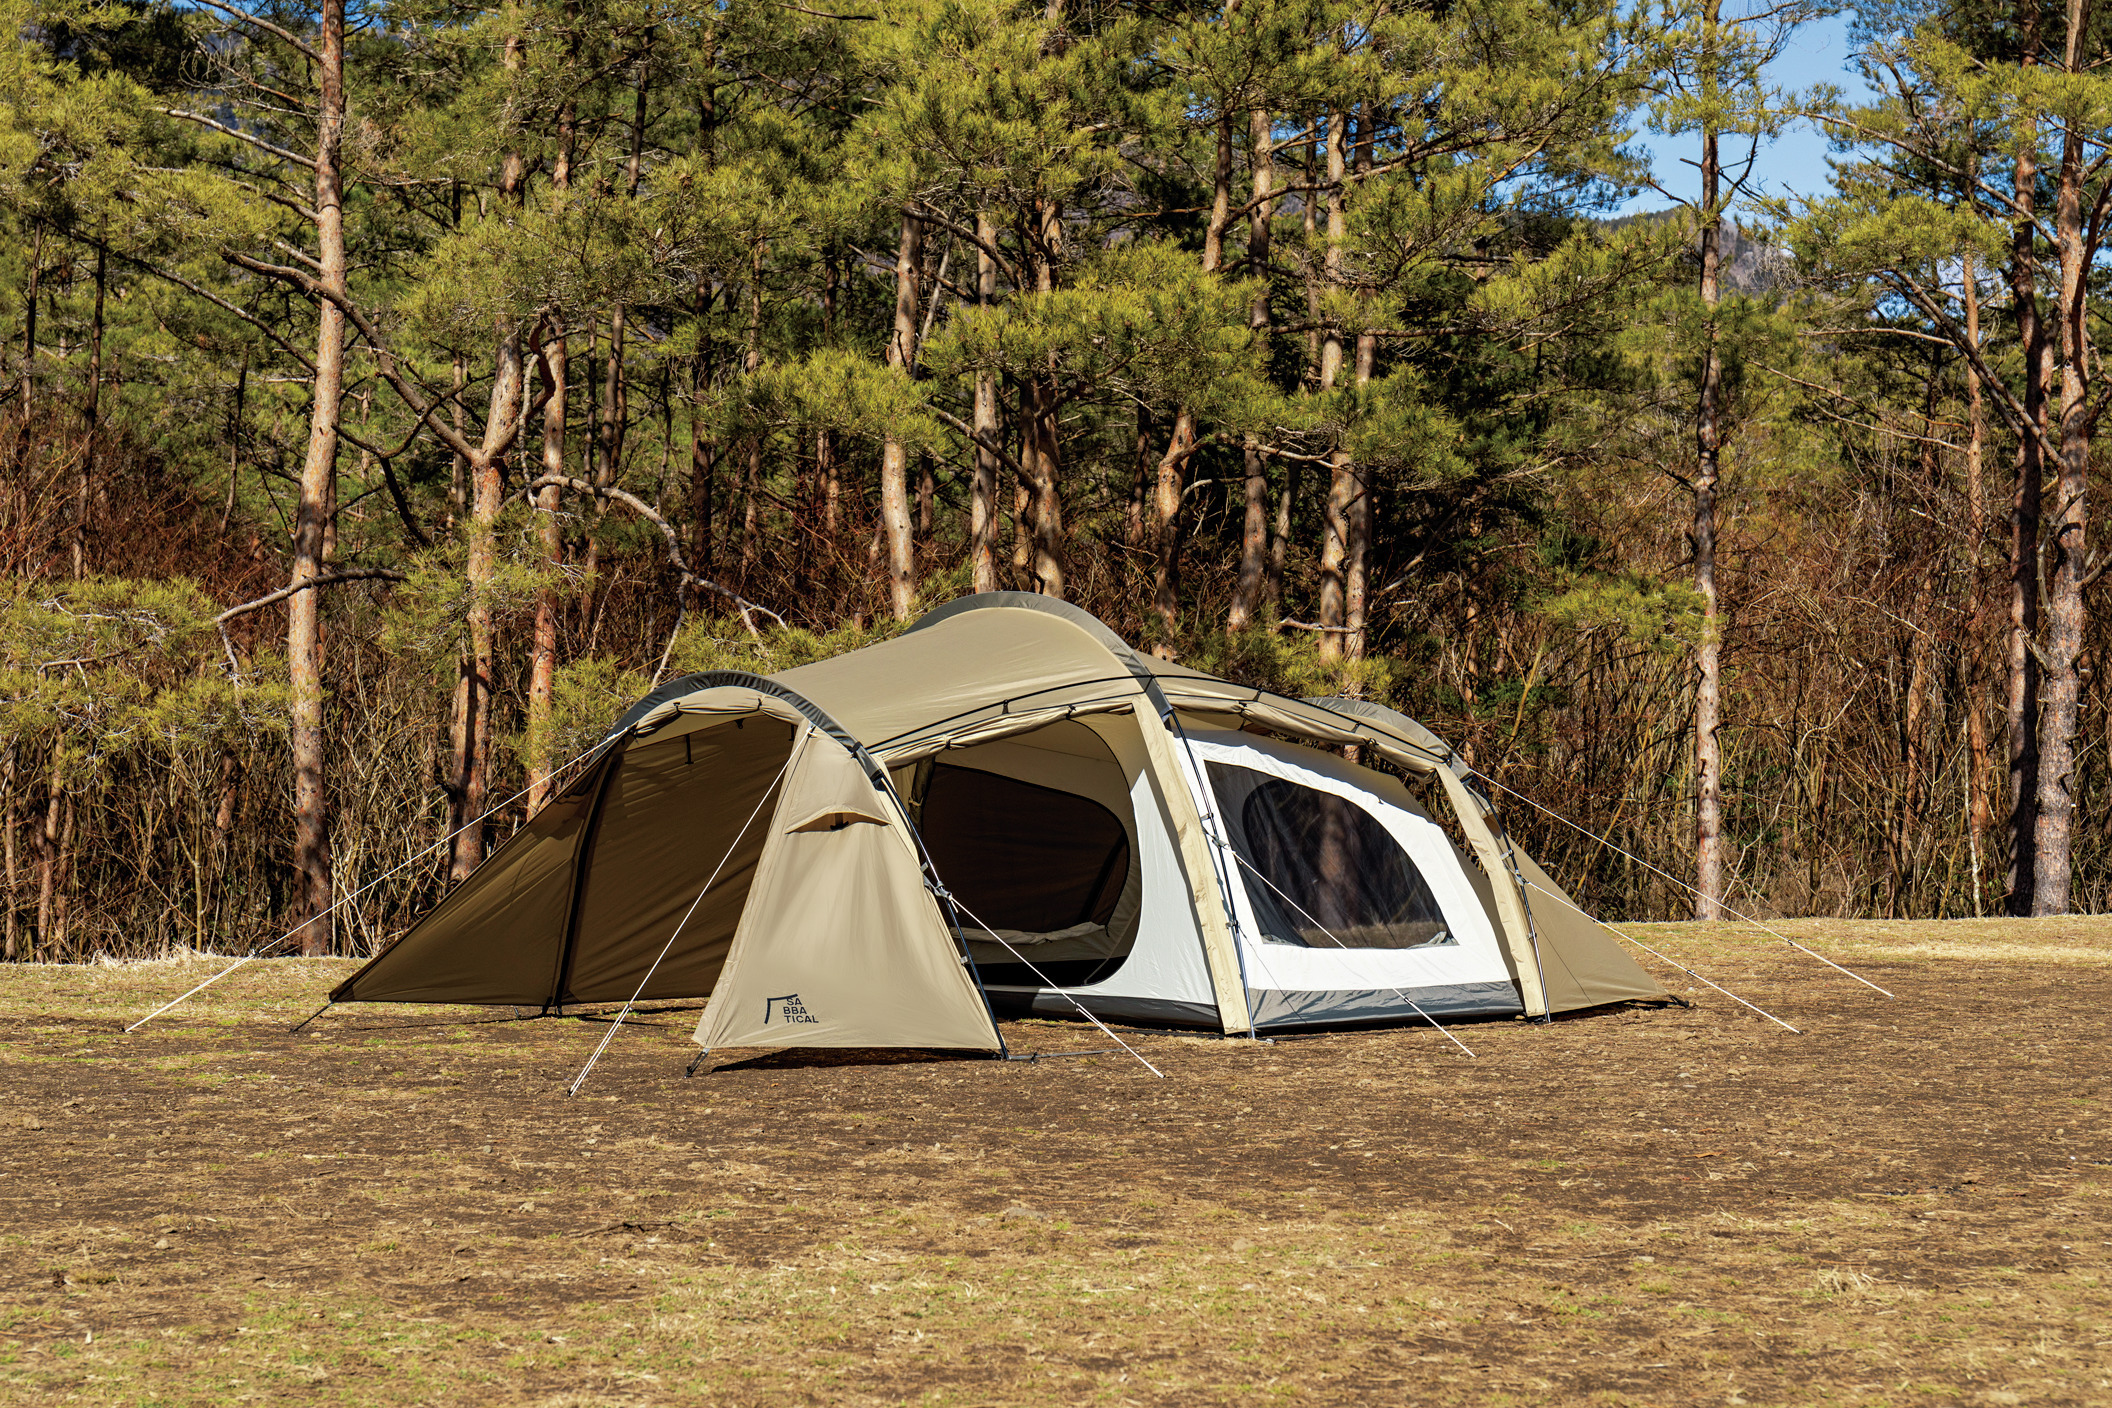 2ルームテントのおすすめ大集合！設営の手間を省いて雨でも広々快適 | テント 【BE-PAL】キャンプ、アウトドア、自然派生活の情報源ビーパル